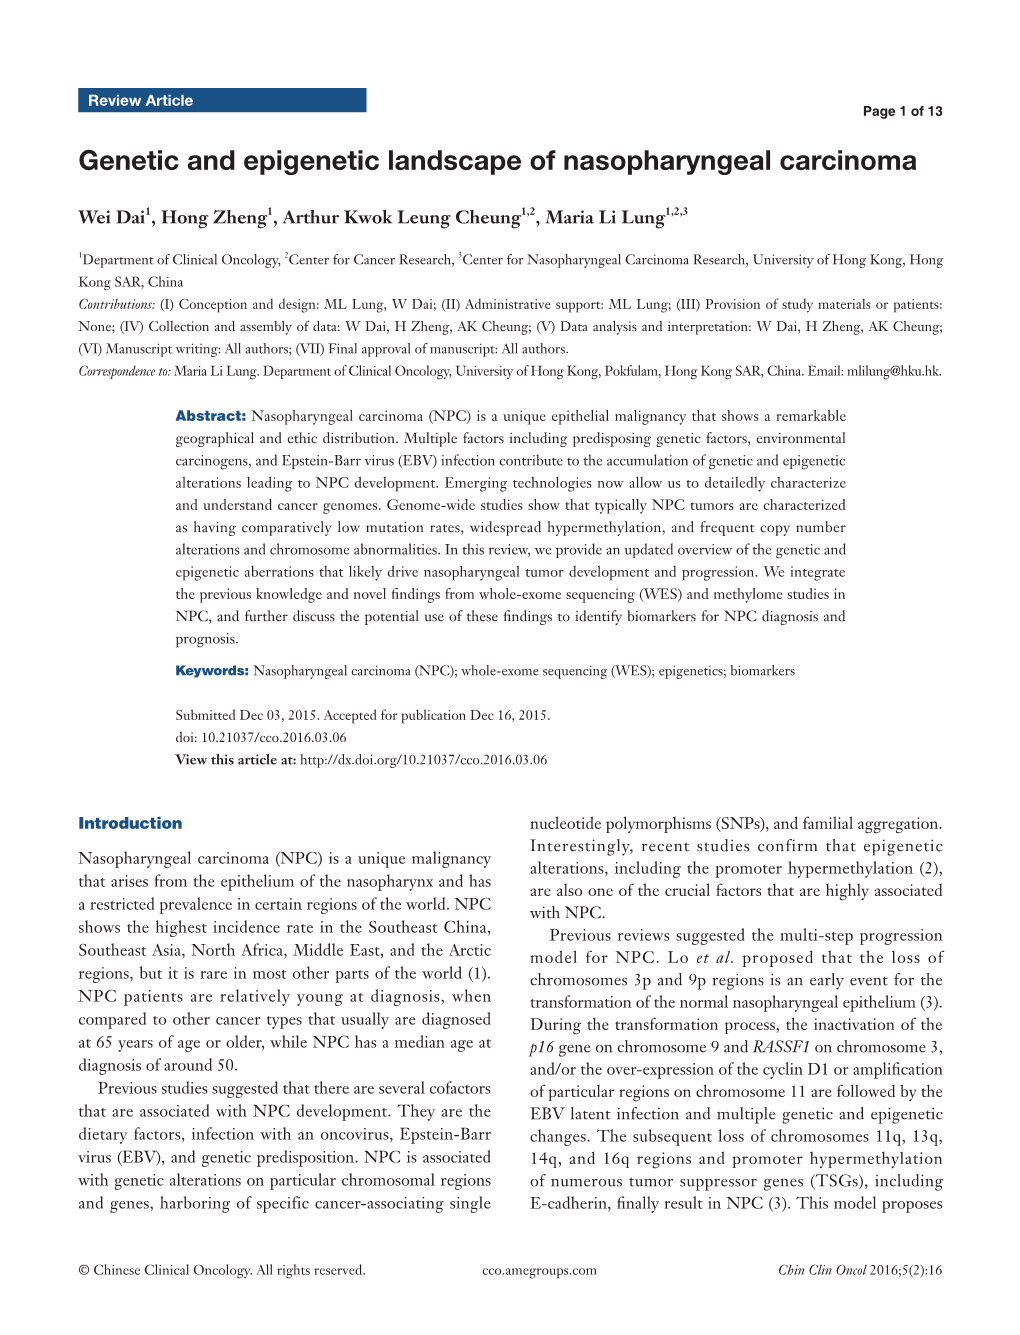 Genetic and Epigenetic Landscape of Nasopharyngeal Carcinoma